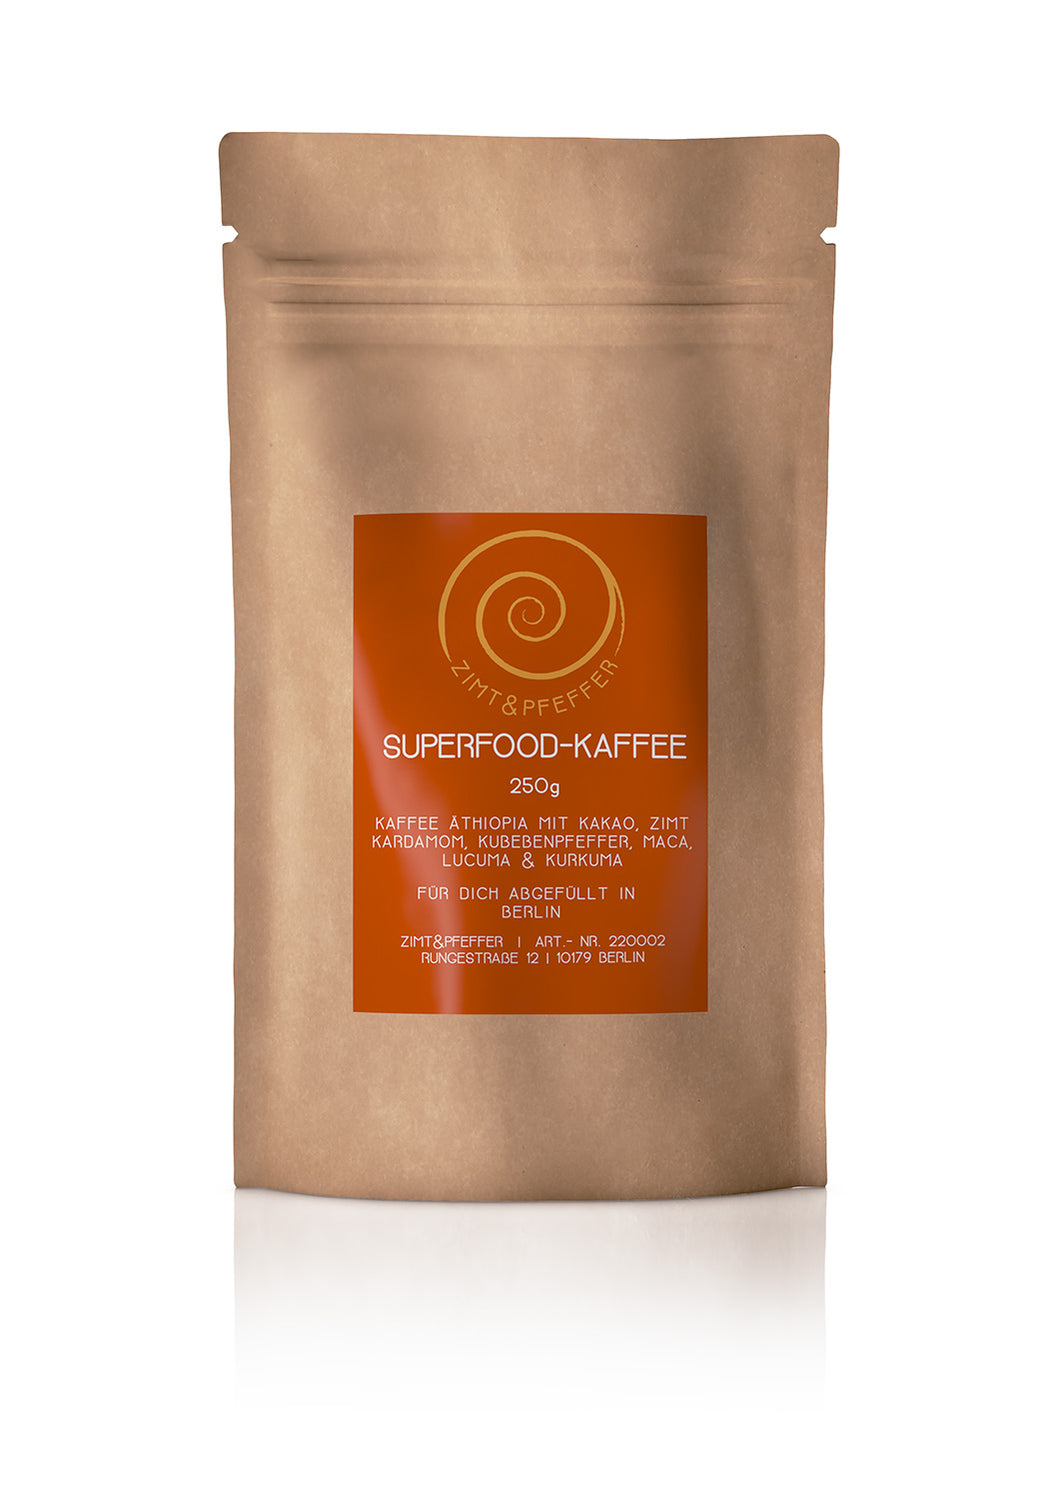 Superfood Kaffee - Kaffee mit orientalischen Gewürzen und Superfoods